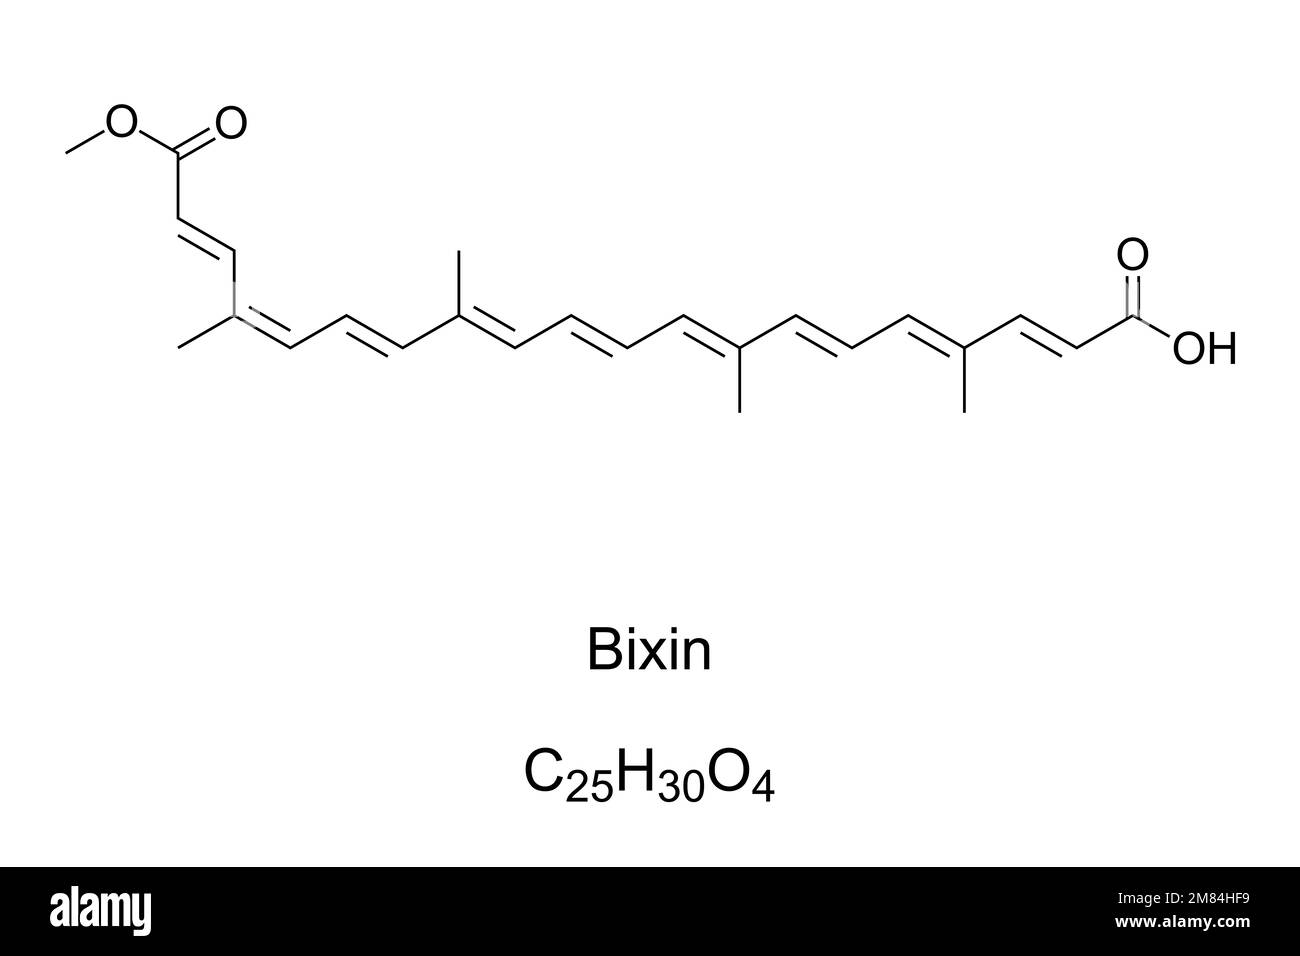 Bixin, cis- oder alpha-Bixin, chemische Formel. Carotinoid, das aus den Samen des Achiotenbaums Bixa orellana extrahiert wird, um Annatto, ein natürliches Pigment, zu bilden. Stockfoto